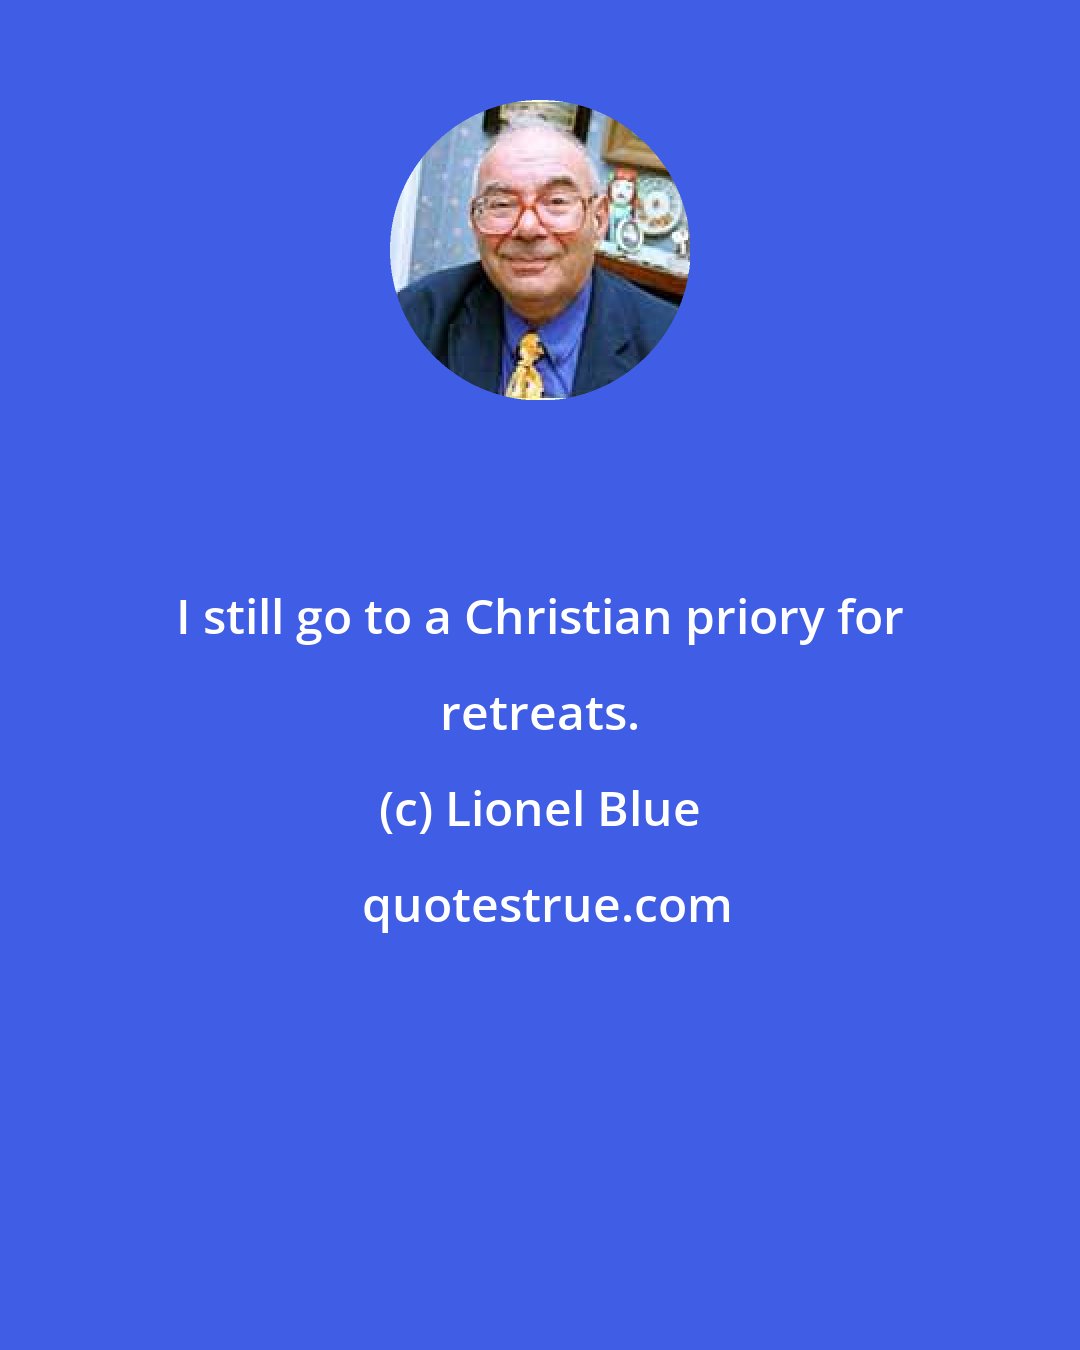 Lionel Blue: I still go to a Christian priory for retreats.